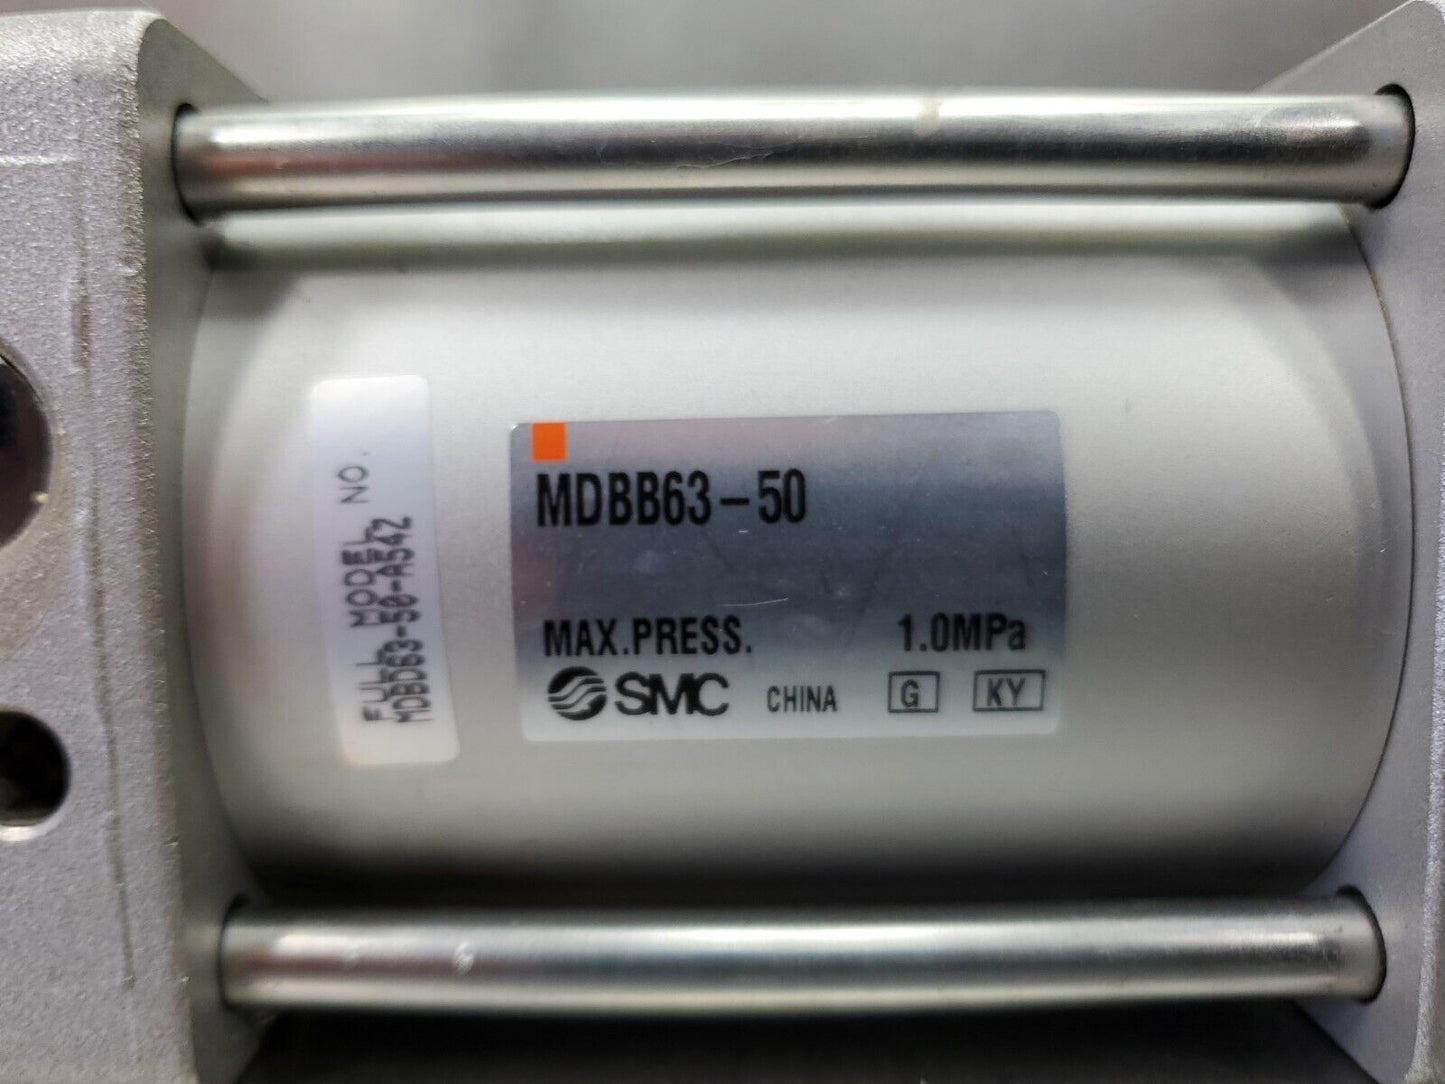 SMC MDBB63-50 Pneumatic Cylinder - Max. Press. 1.0MPa                      6D-20